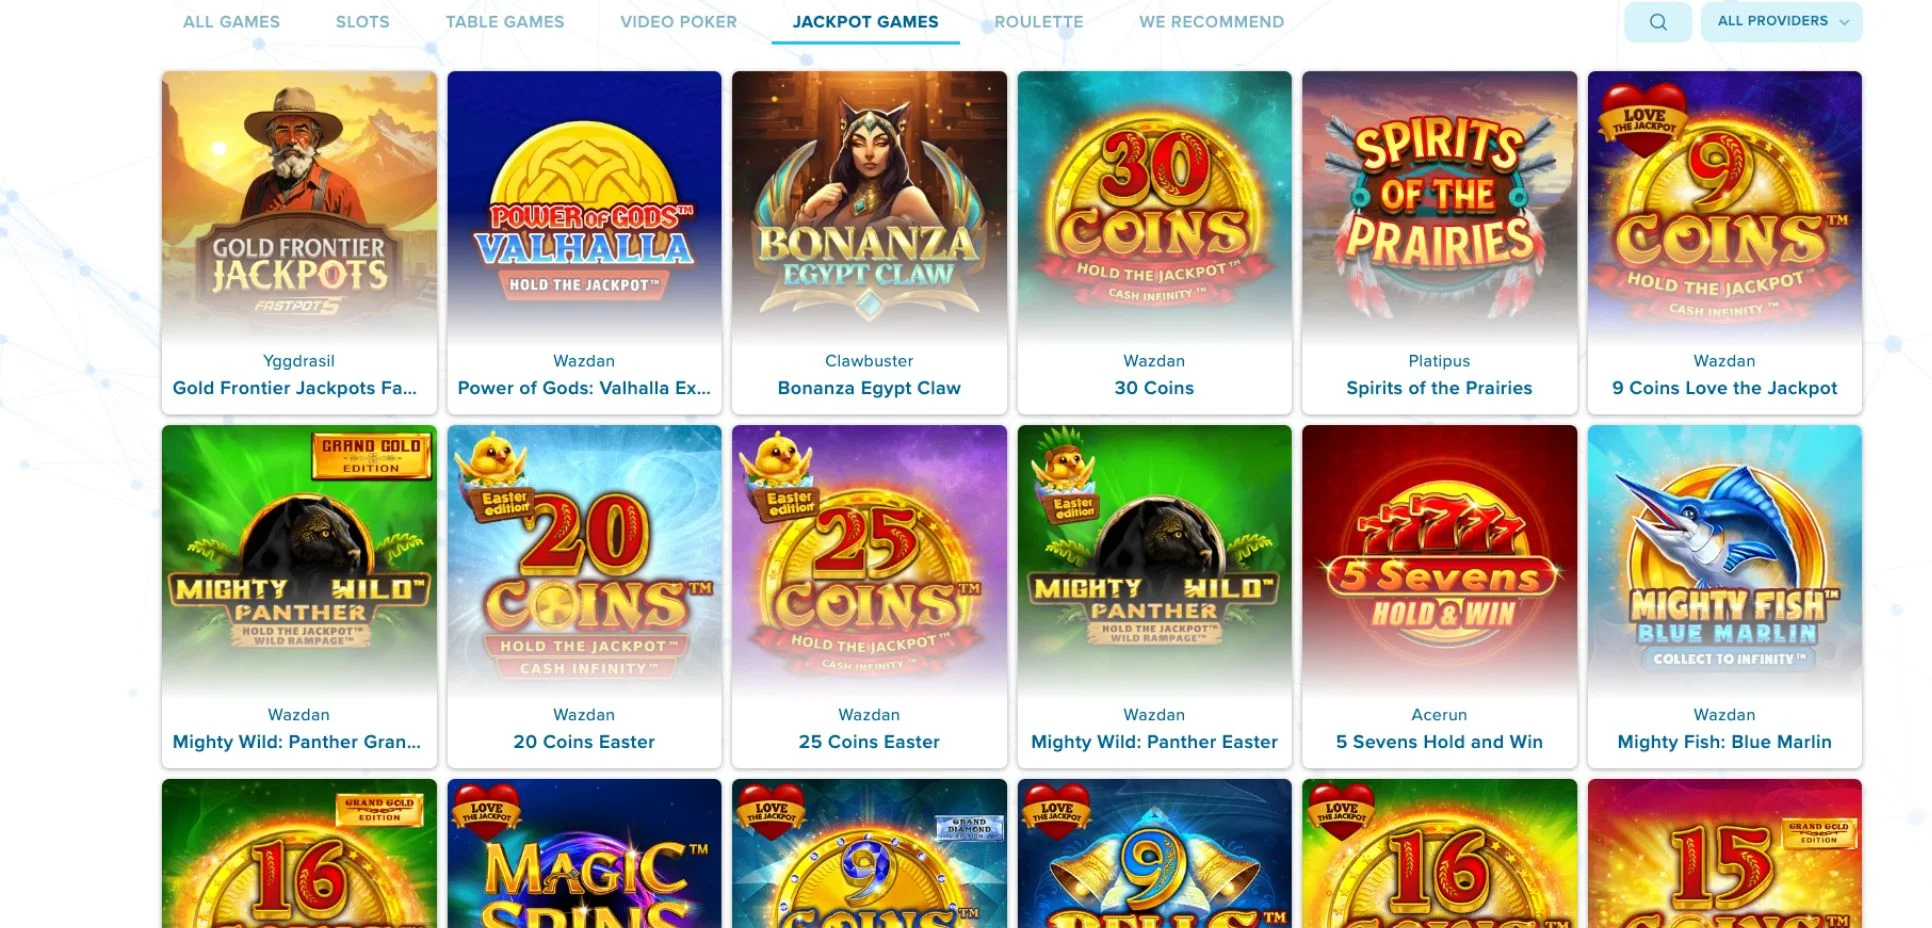 North Casino Jackpot Games in Australia